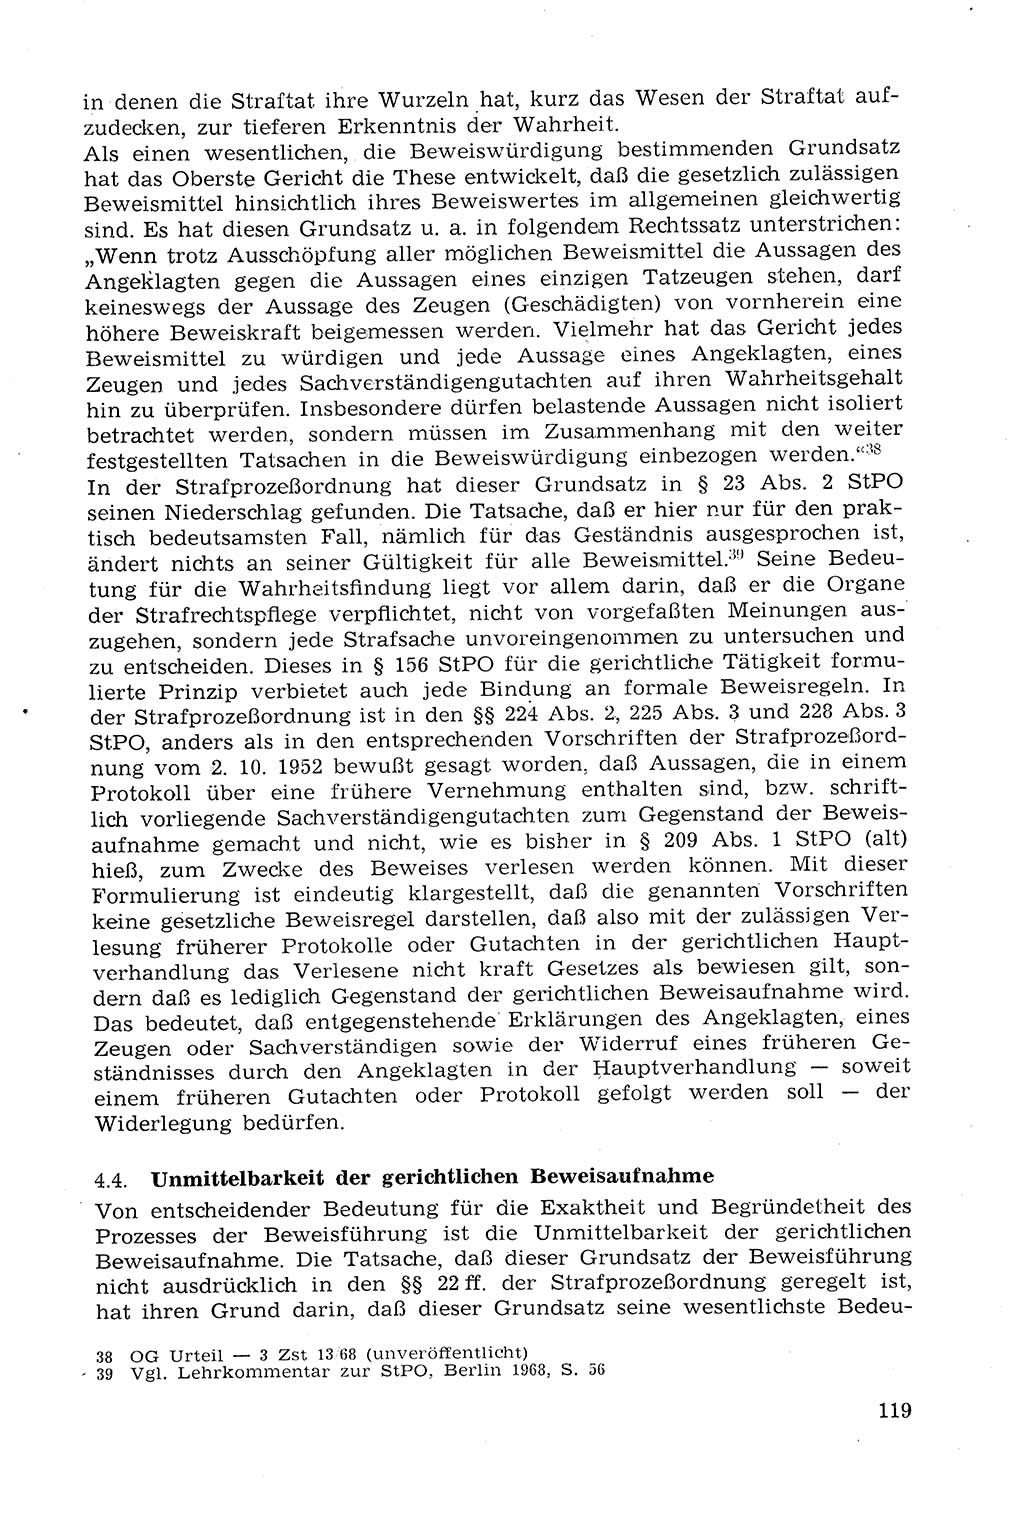 Strafprozeßrecht der DDR (Deutsche Demokratische Republik), Lehrmaterial 1969, Seite 119 (Strafprozeßr. DDR Lehrmat. 1969, S. 119)